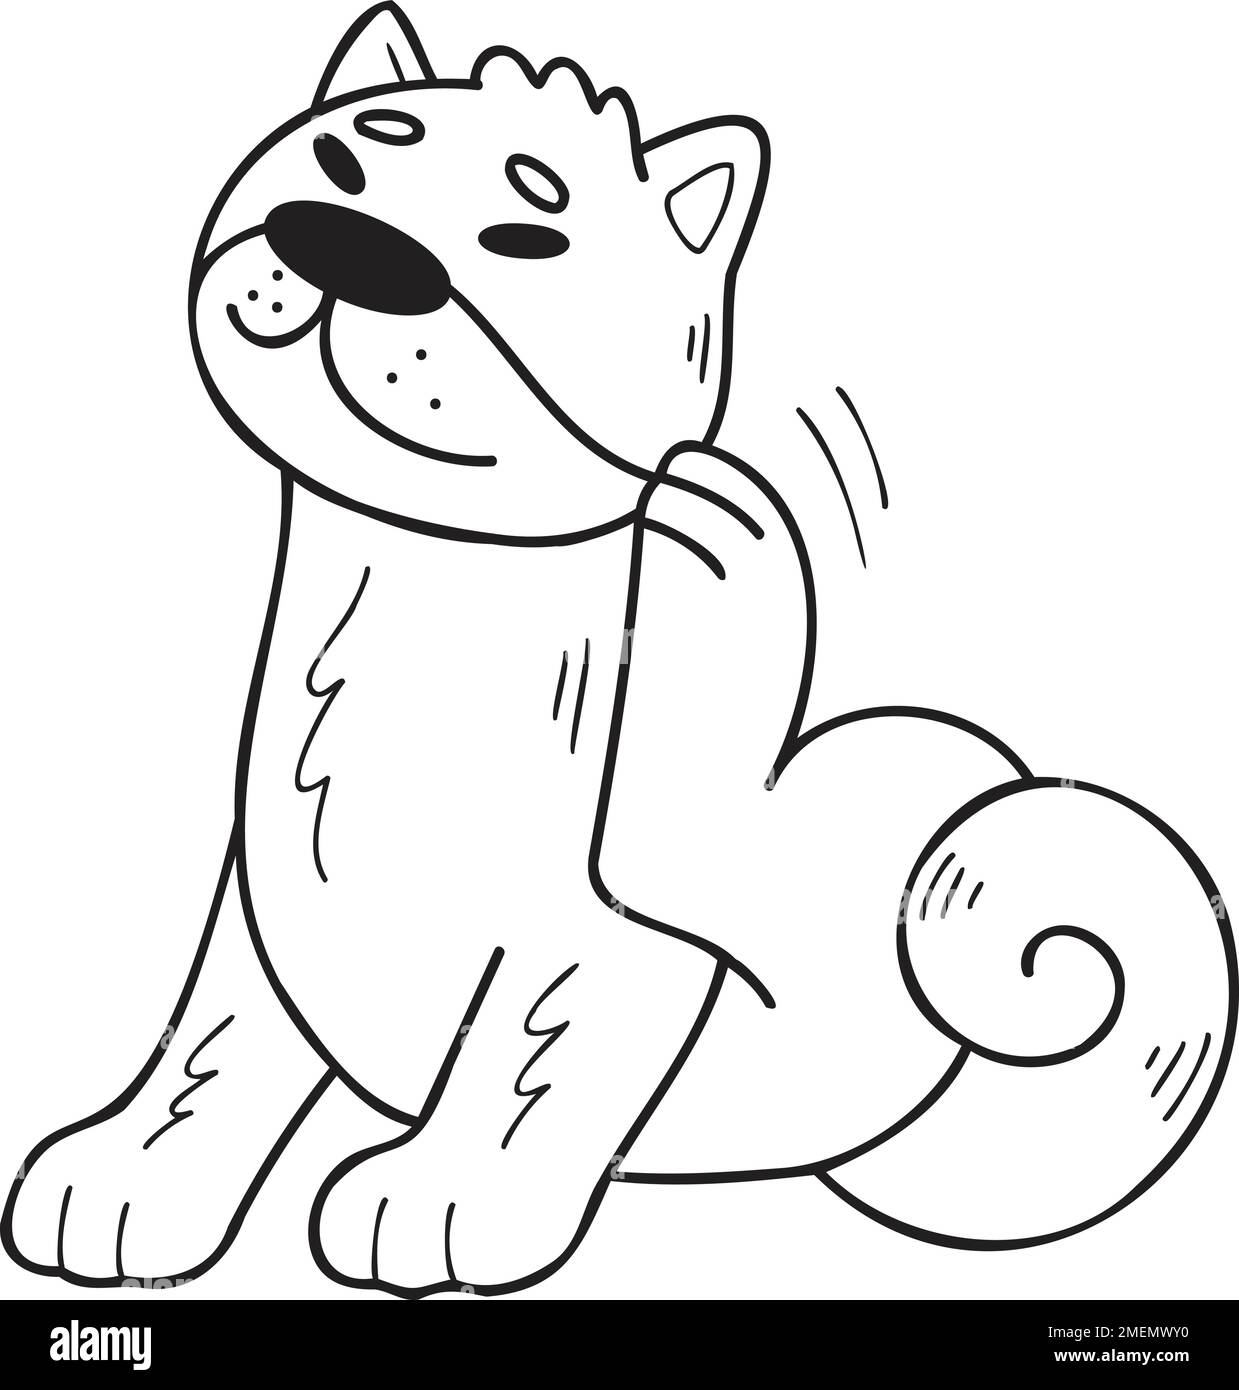 Handgezogener Shiba Inu Hund kratzende Haare Illustration im Doodle-Stil isoliert auf dem Hintergrund Stock Vektor